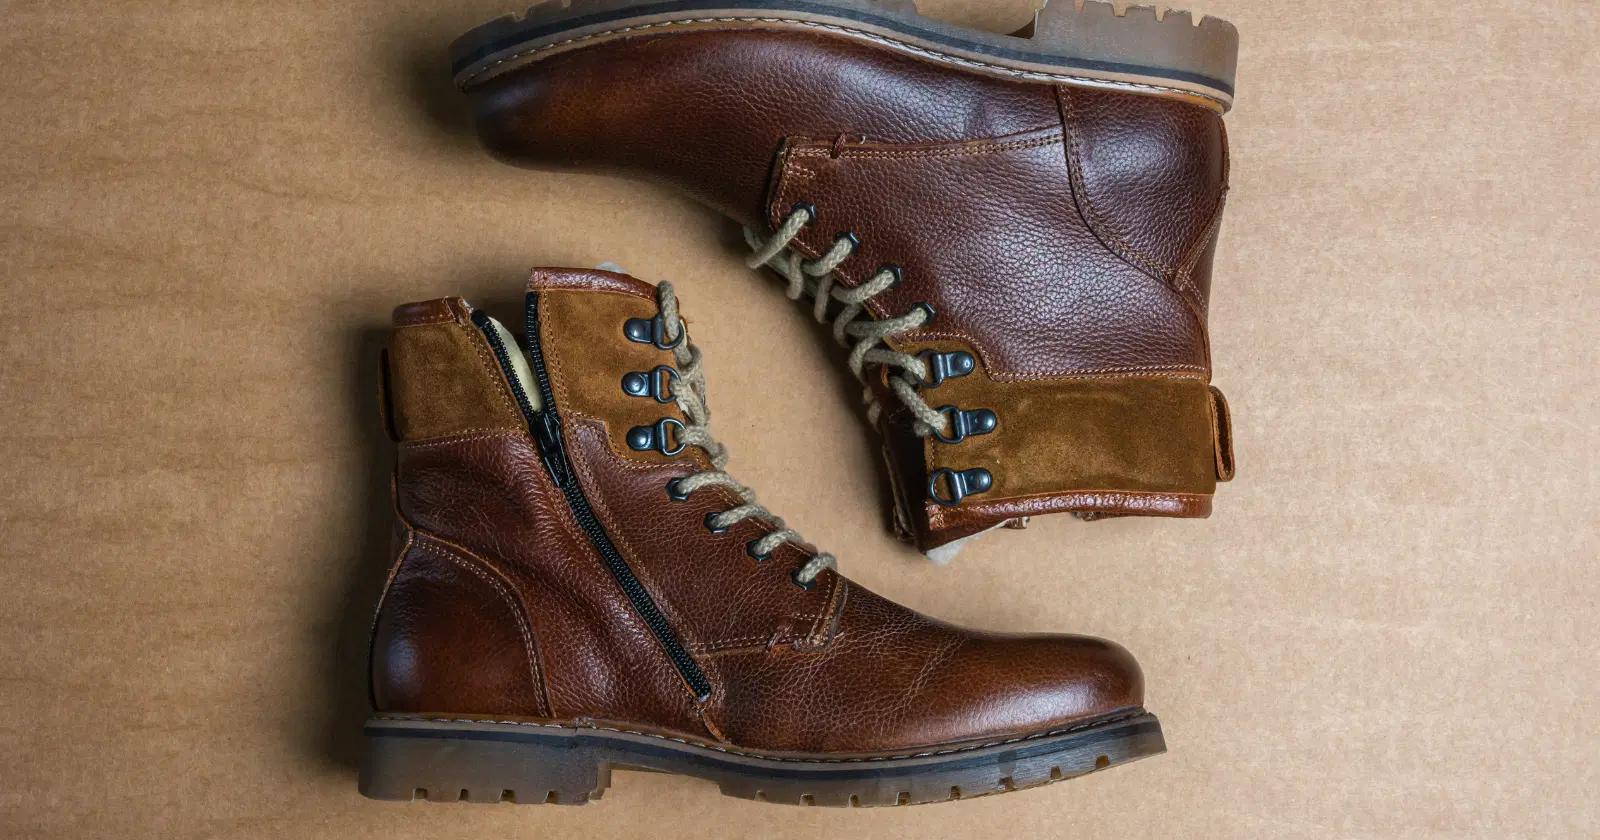 10 Best Brands For Boots Like Blundstone | ClothedUp